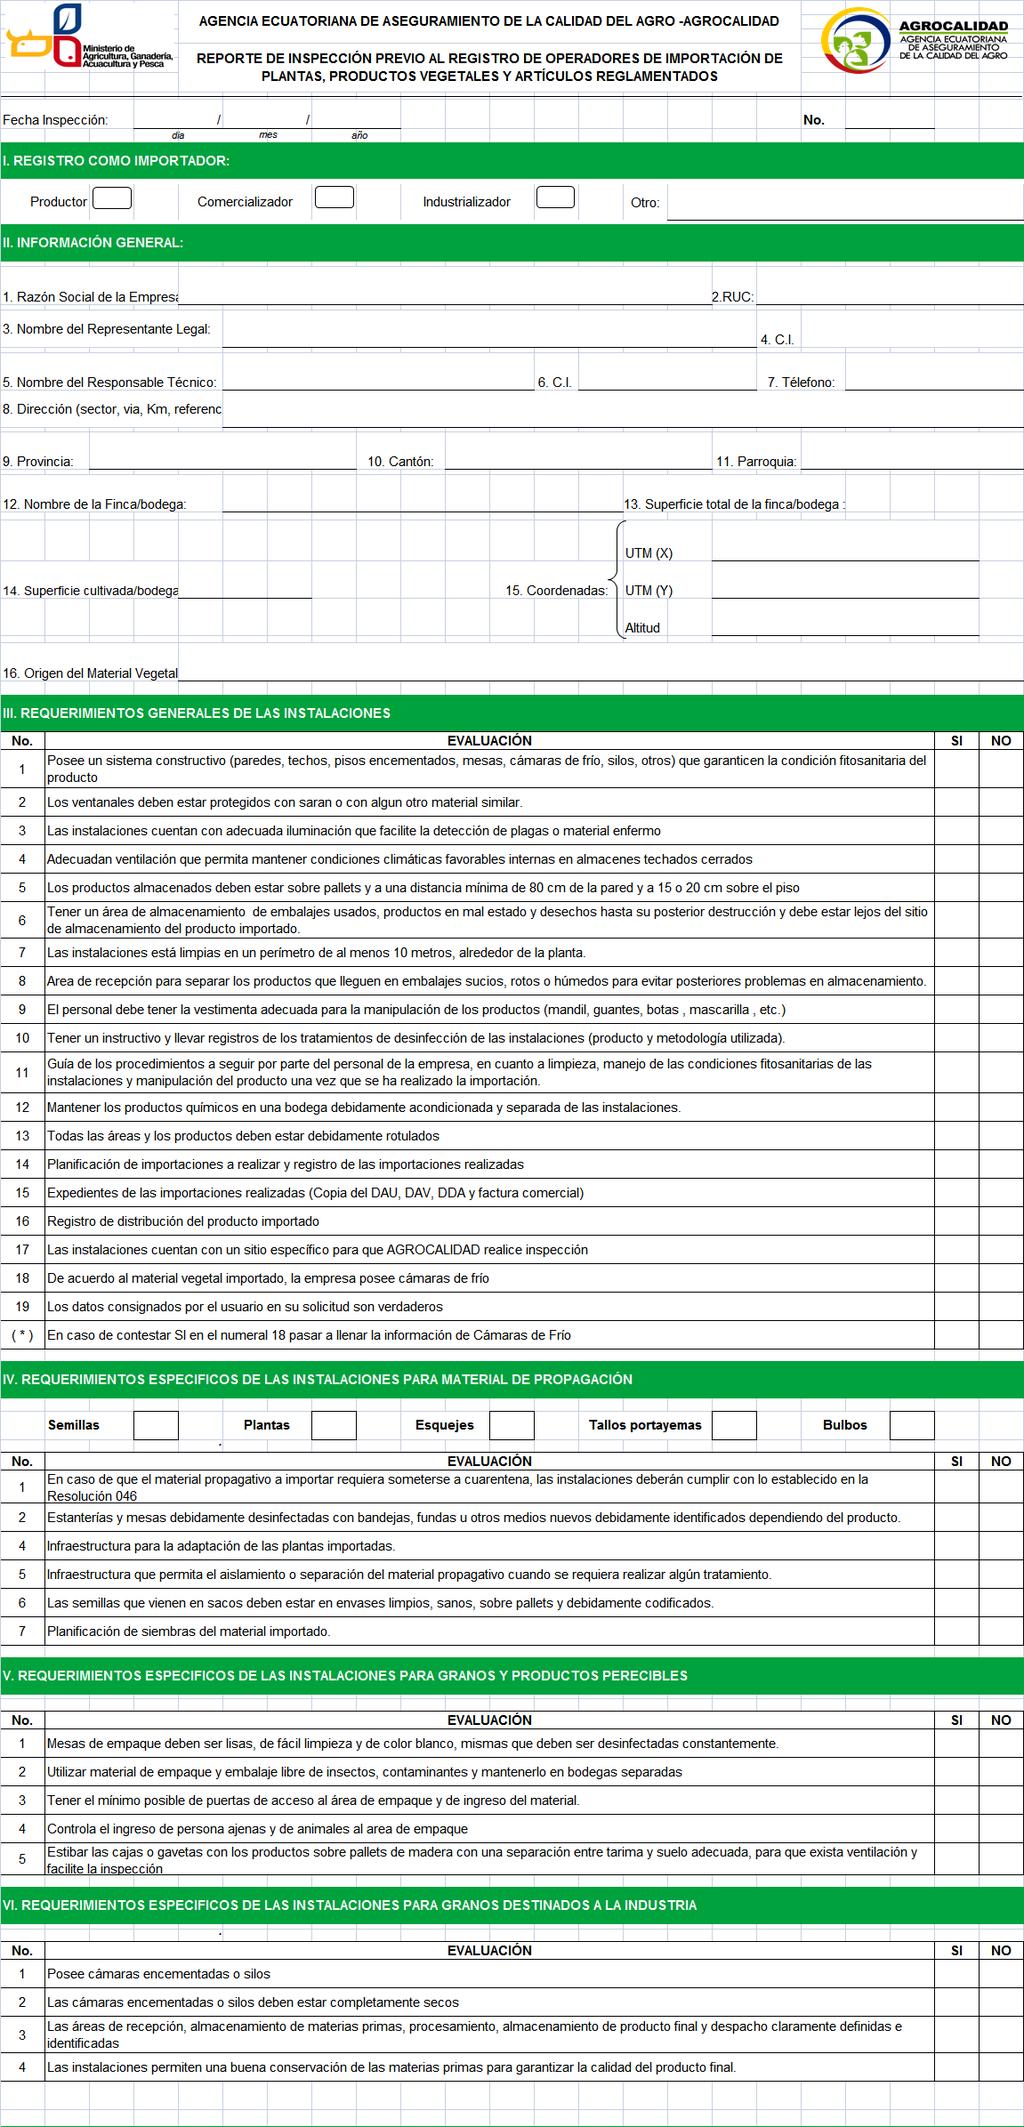 Formulario AGR- DSV- CV- 02-02: Reporte de inspección para operadores de